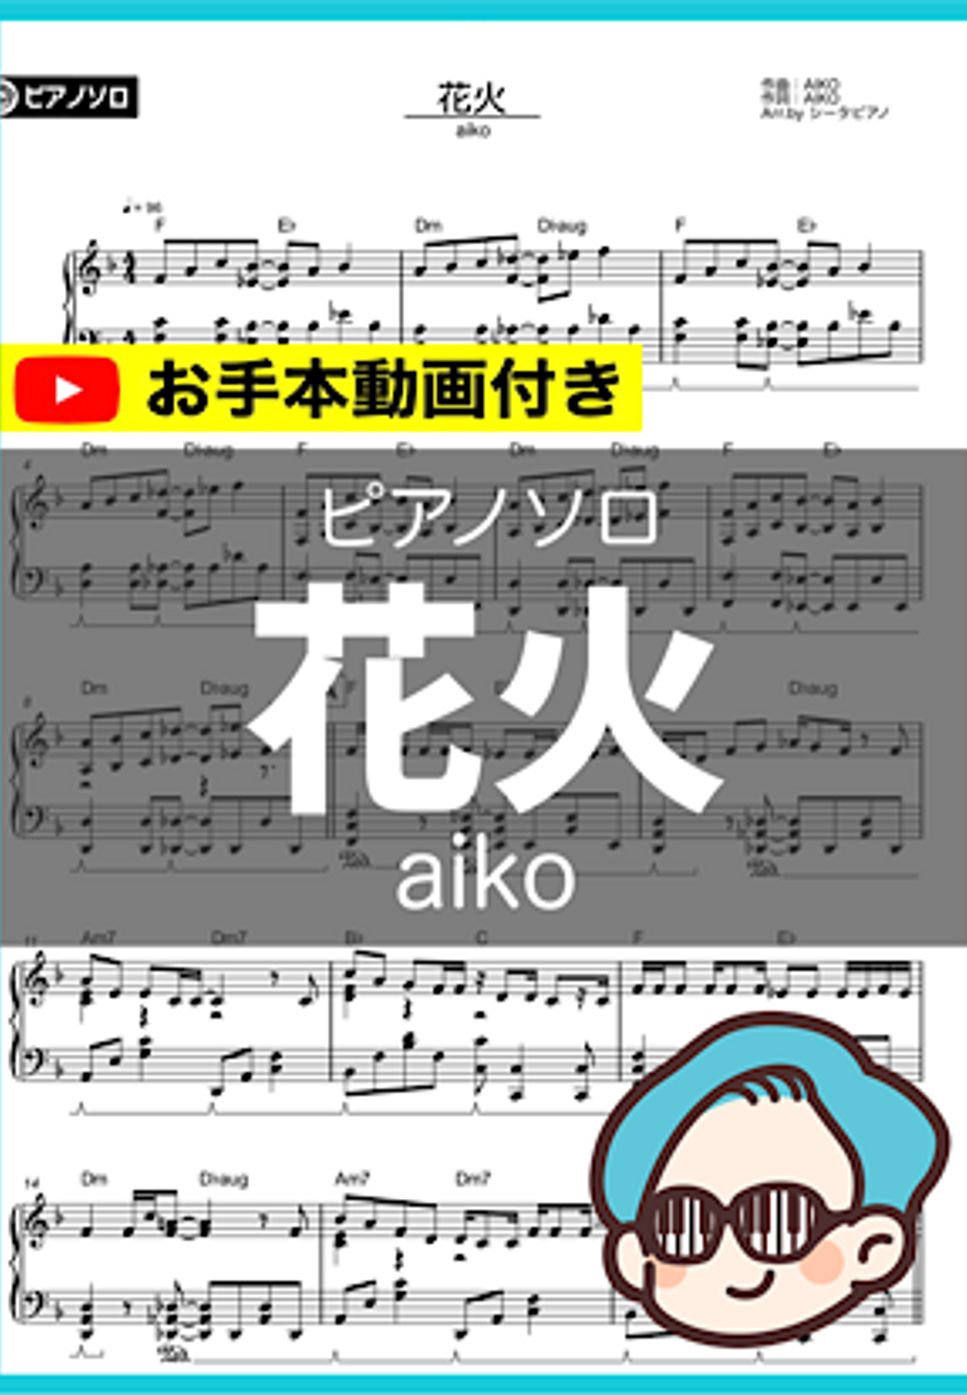 aiko - 花火 by シータピアノ